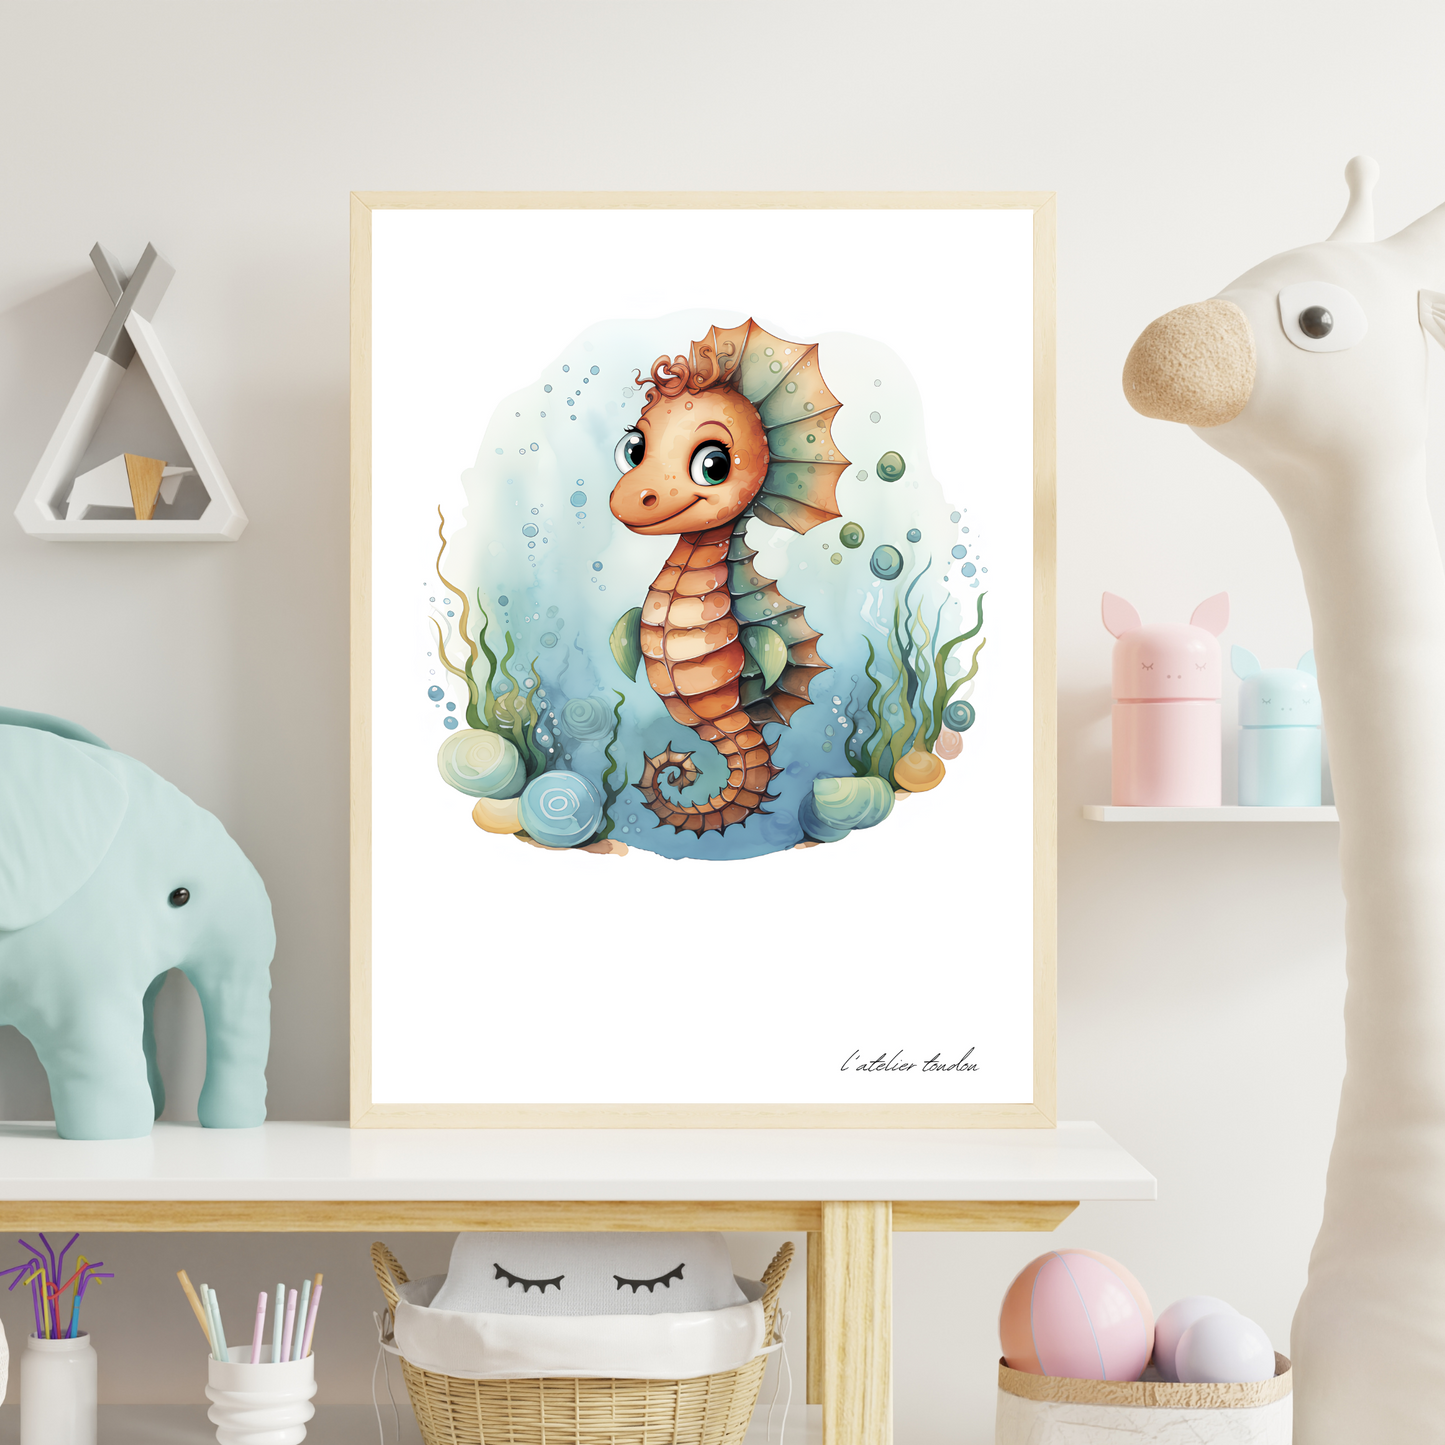 L'hippocampe, décoration pour chambre enfant, chambre bébé illustration à offrir, thème marin, aquarelle